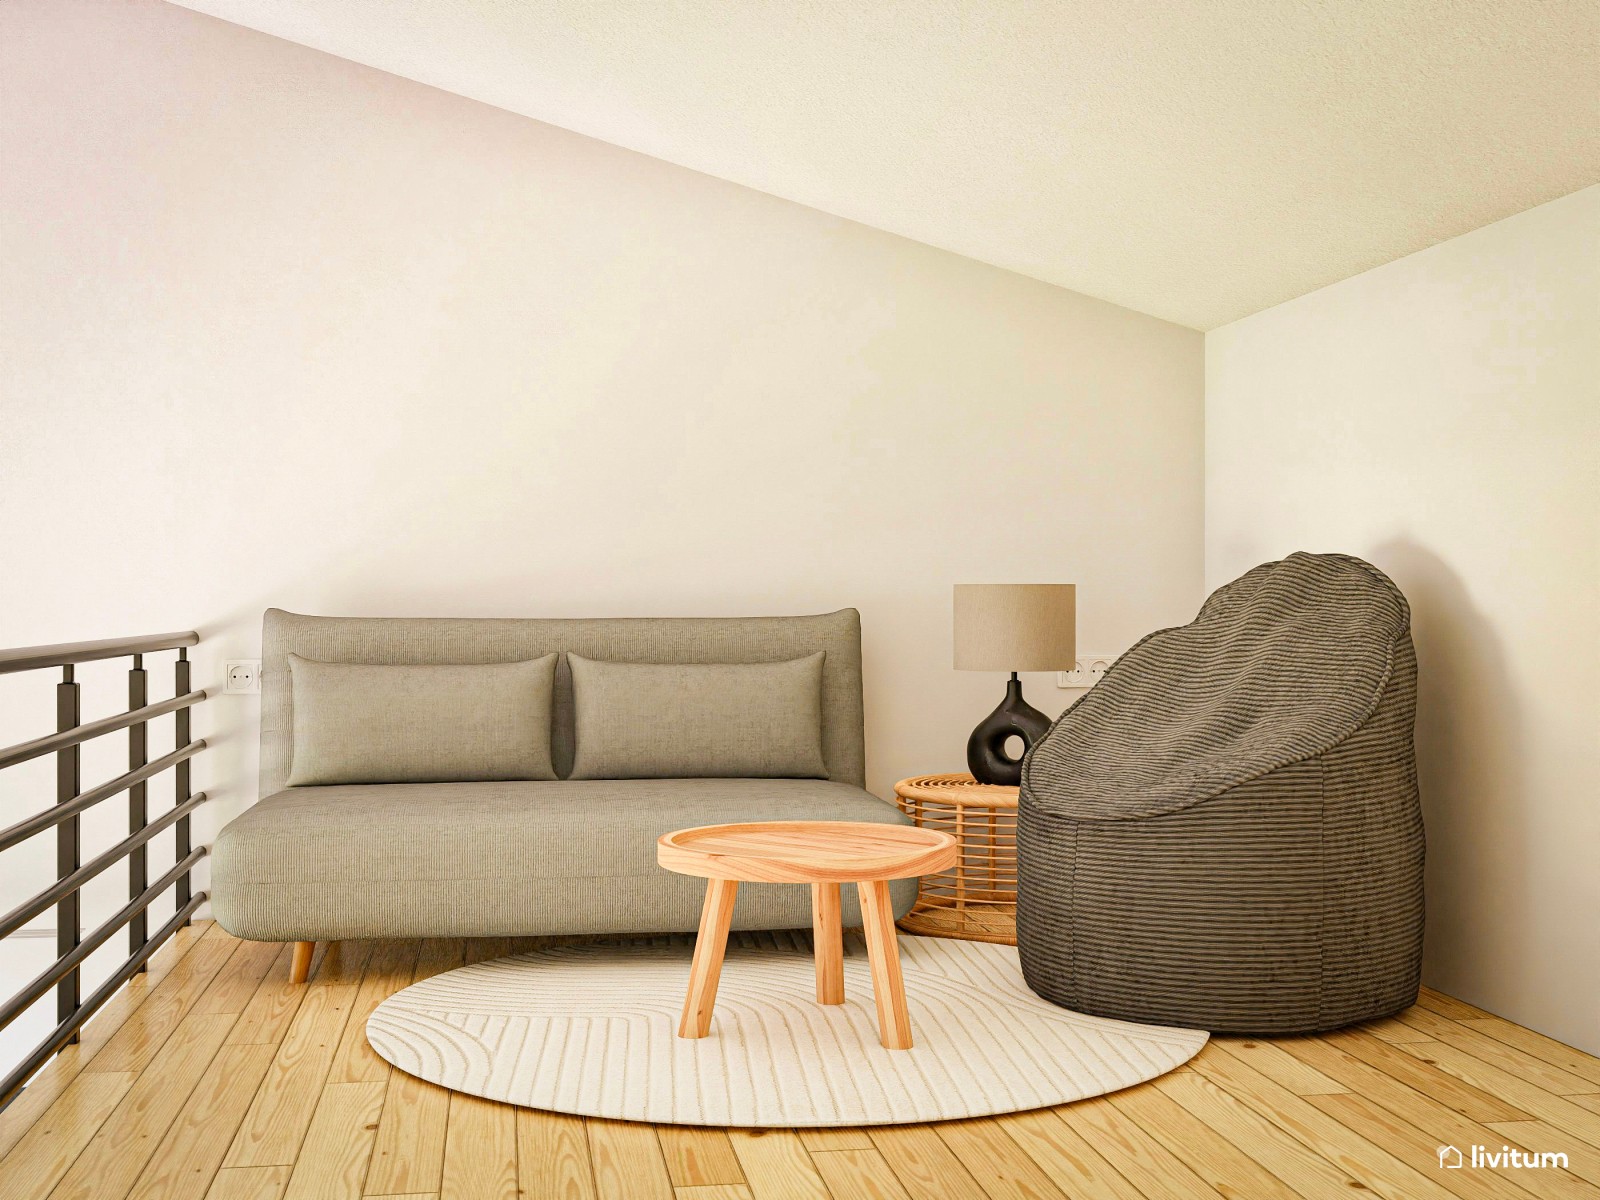 Dúplex con cocina, sala de estar y zona de relax de estilo nórdico 